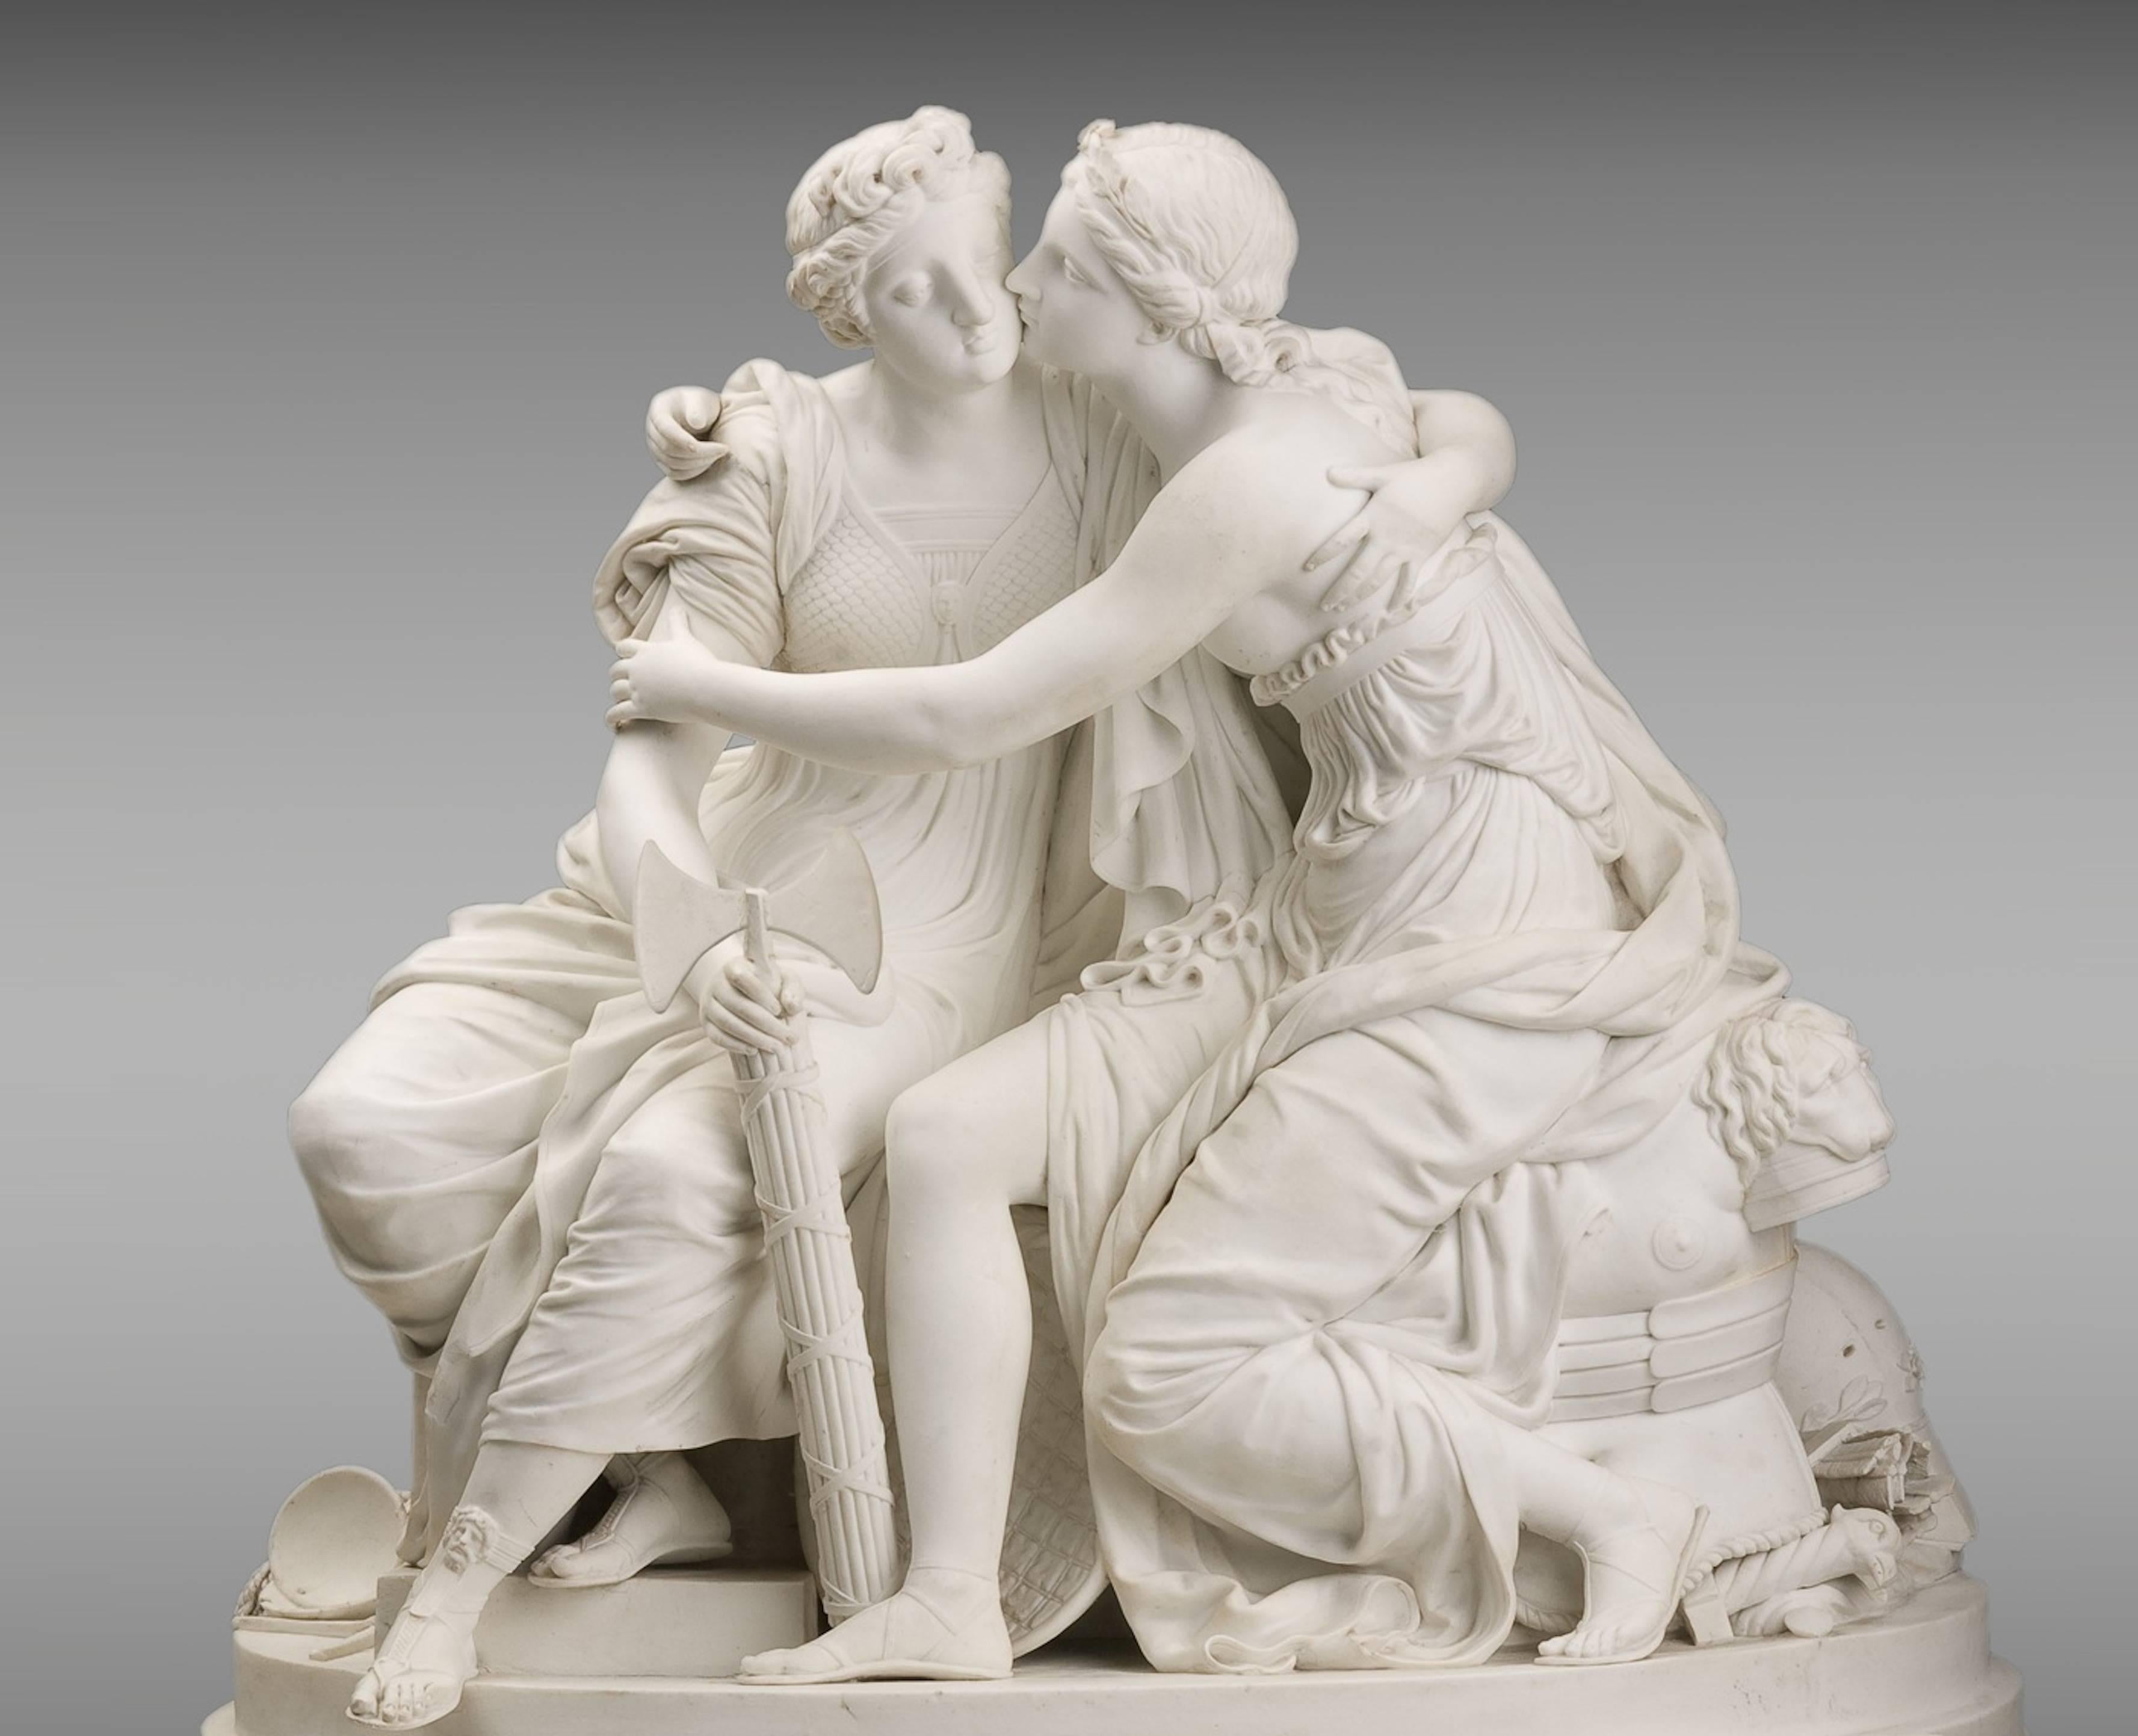 French porcelain group "La Justice et la Paix" end of the 18th century.
An unglazed porcelain group.

